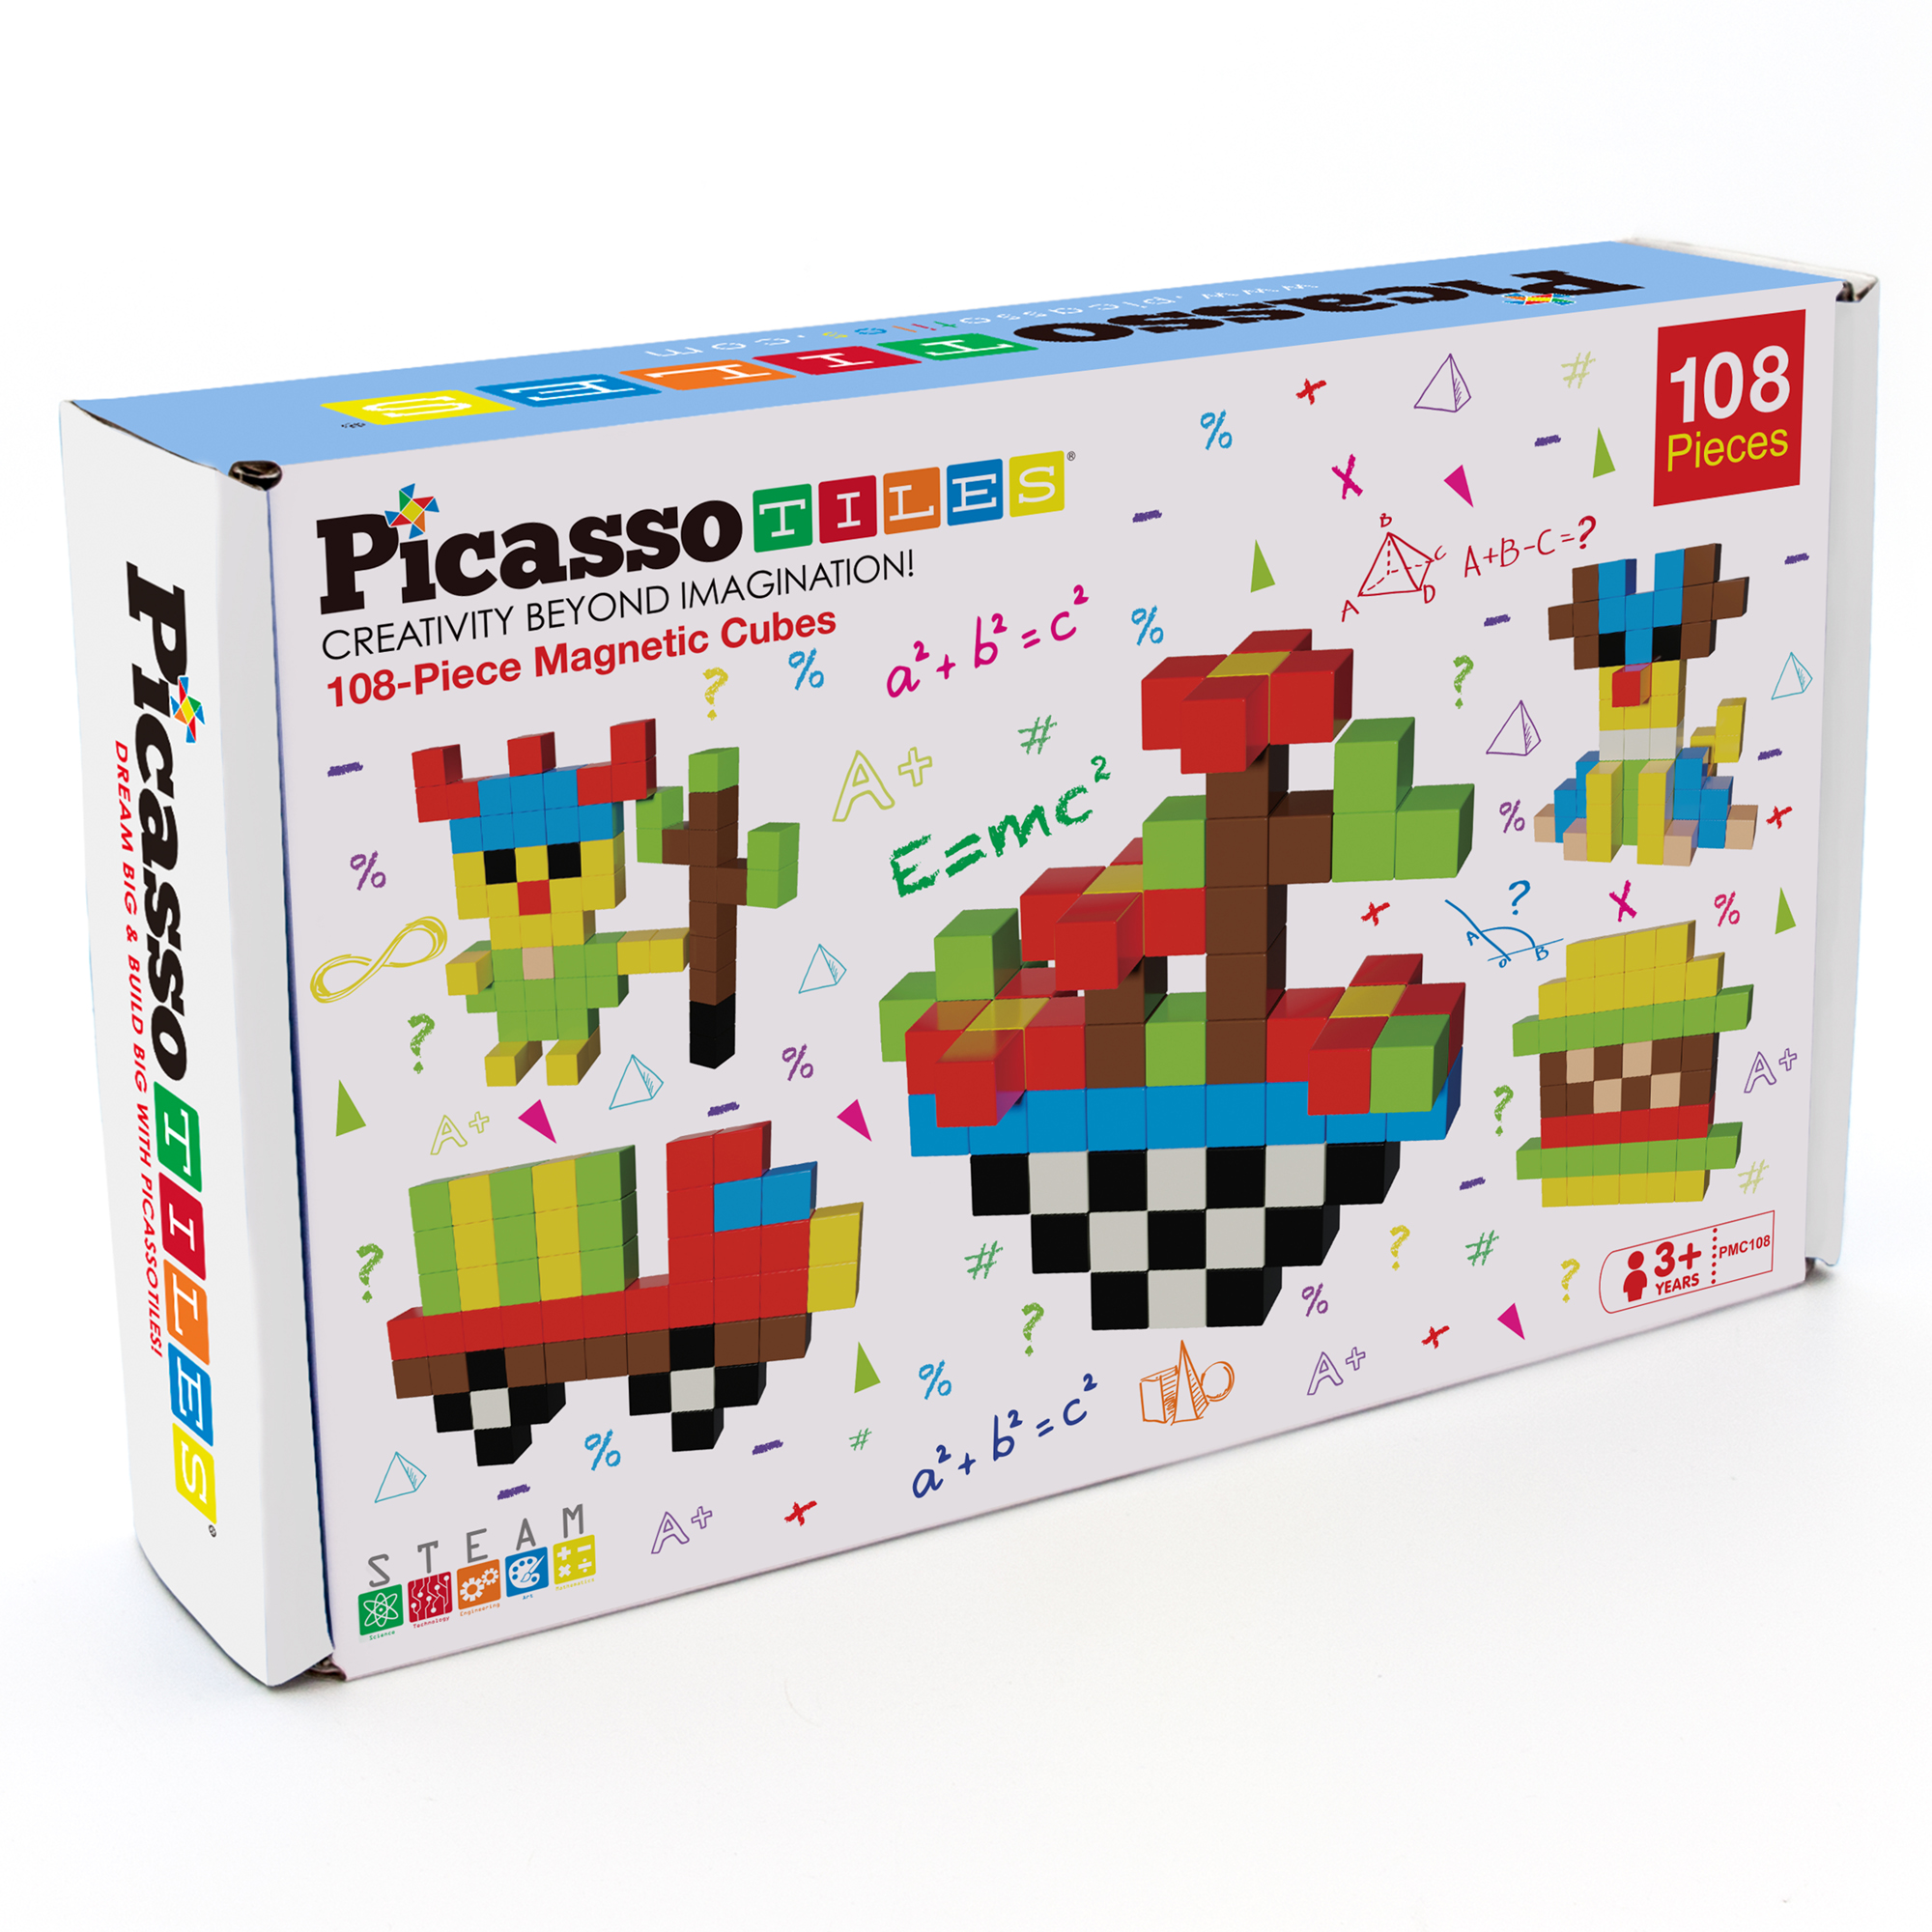 PicassoTiles Magnetic Cubes, 108 Pieces